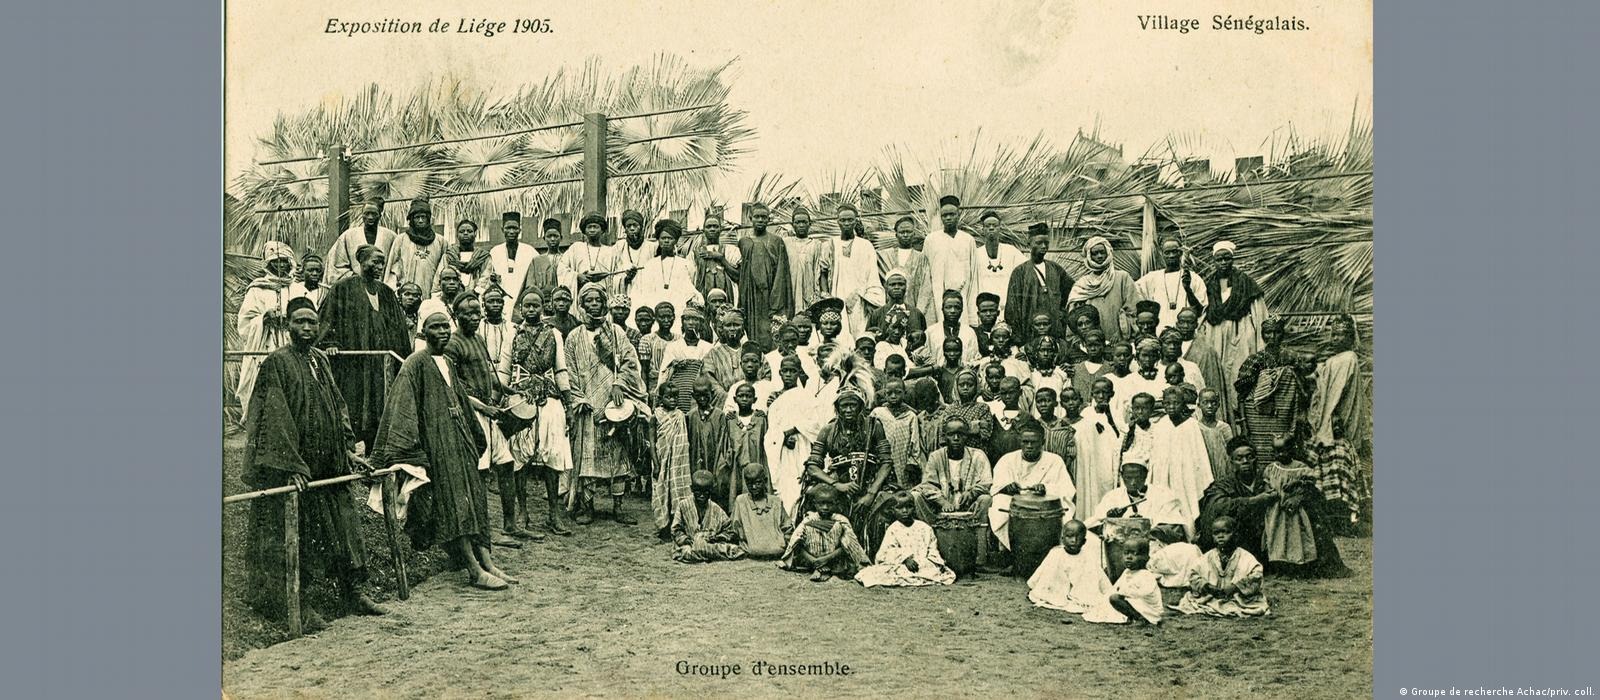 Бельгиянинг Леж шаҳридаги кўргазма, 1905 йил